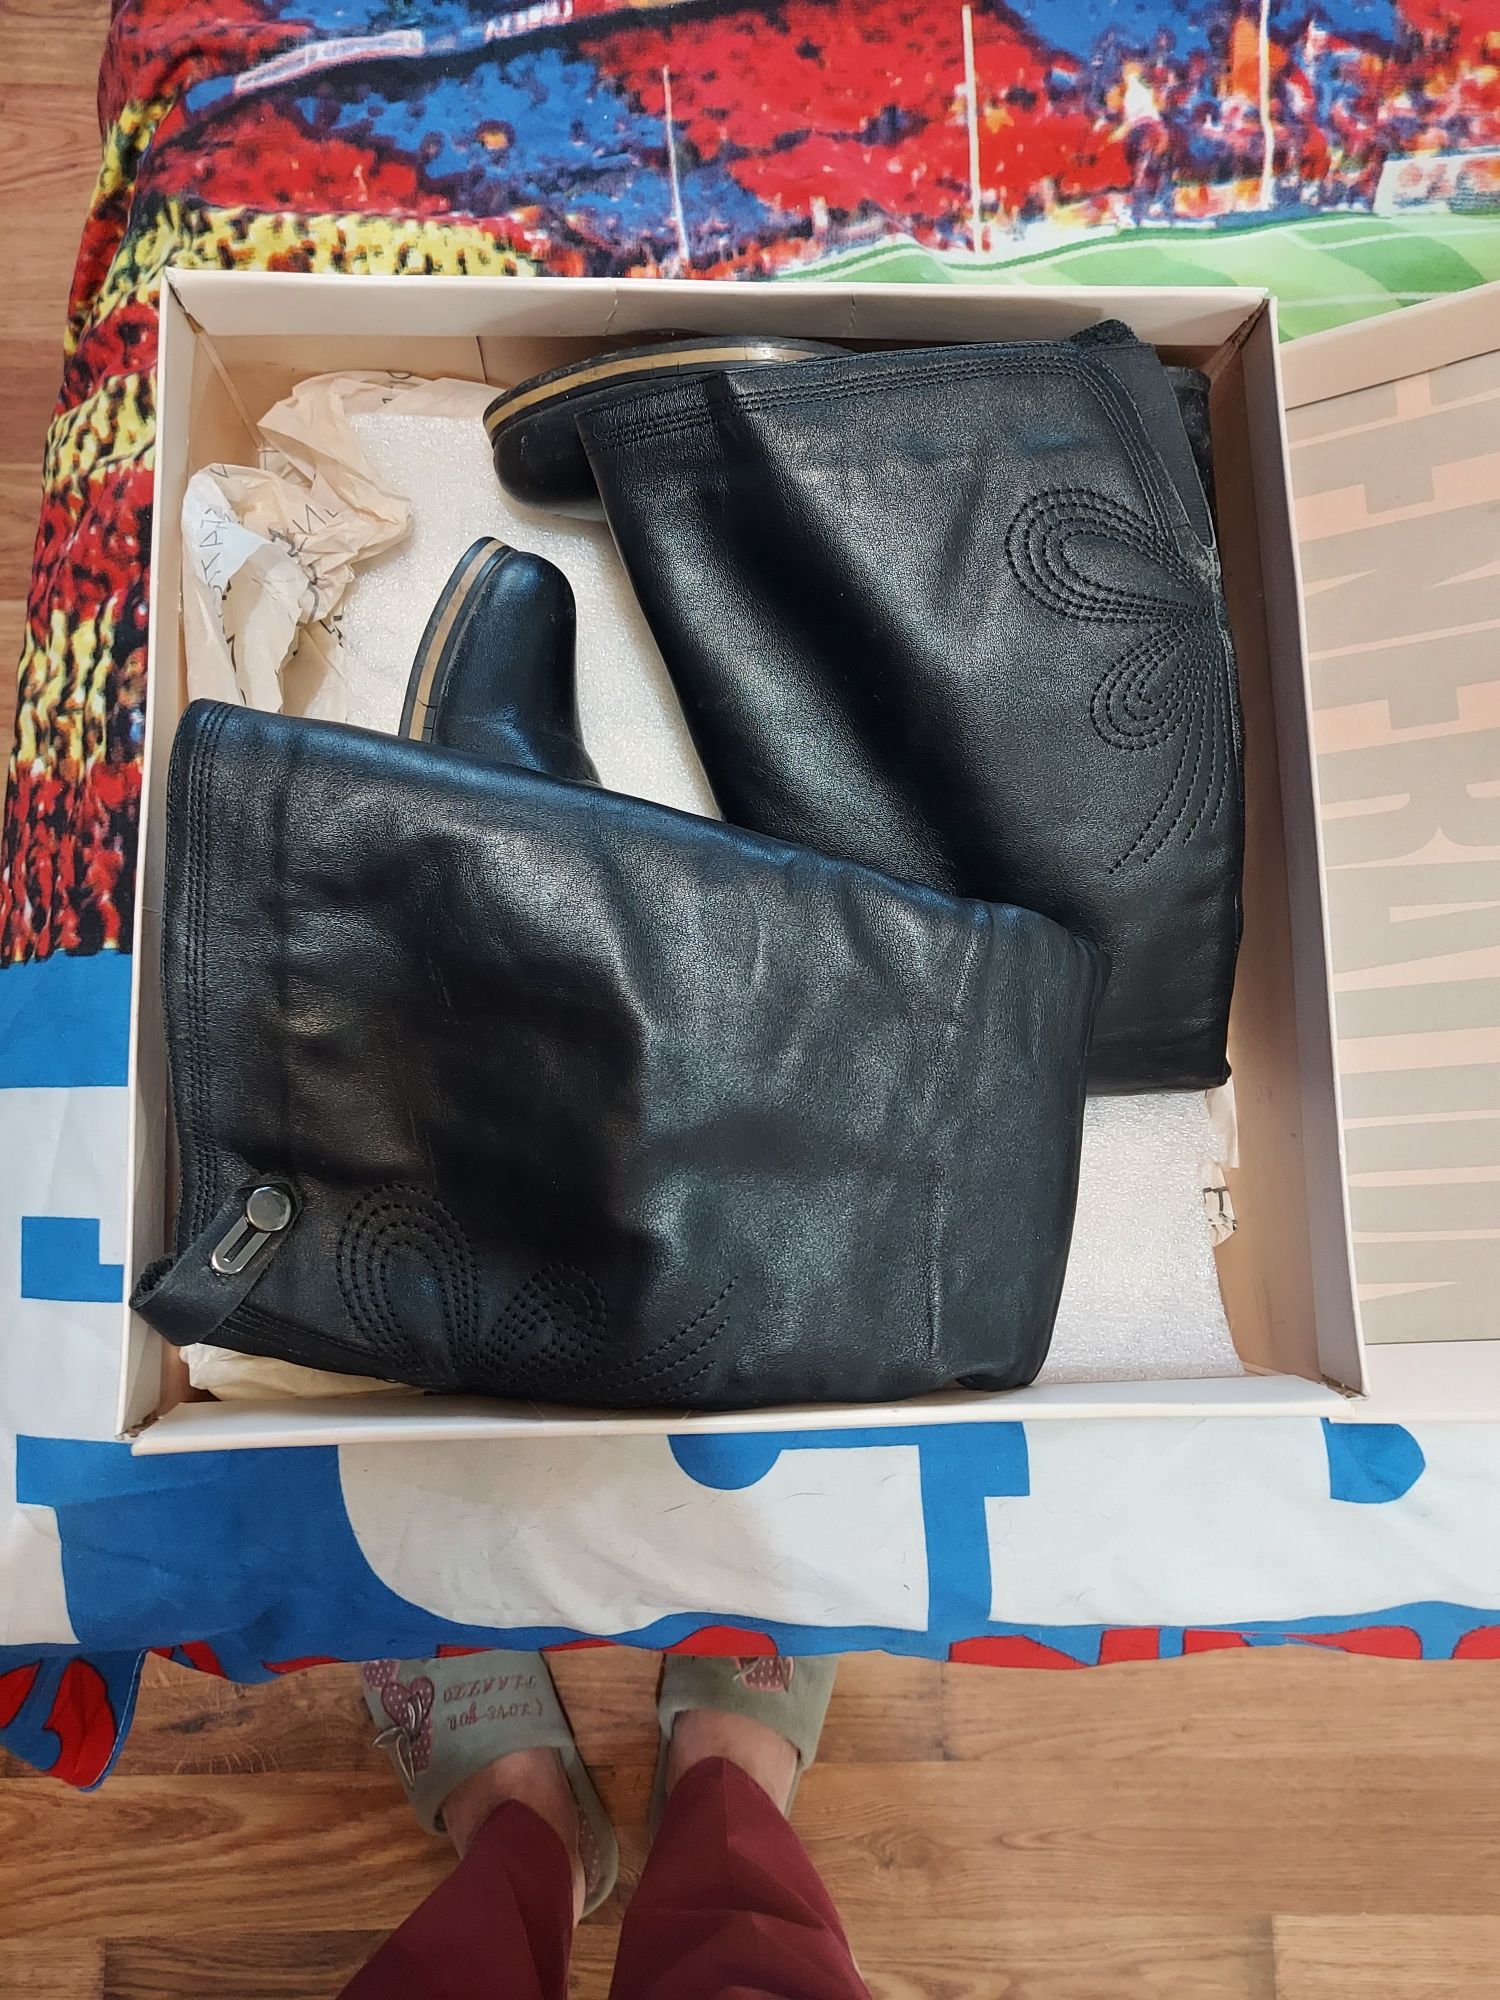 Отлам даром зимние сапоги 38р +пакет женских вещей за 3000